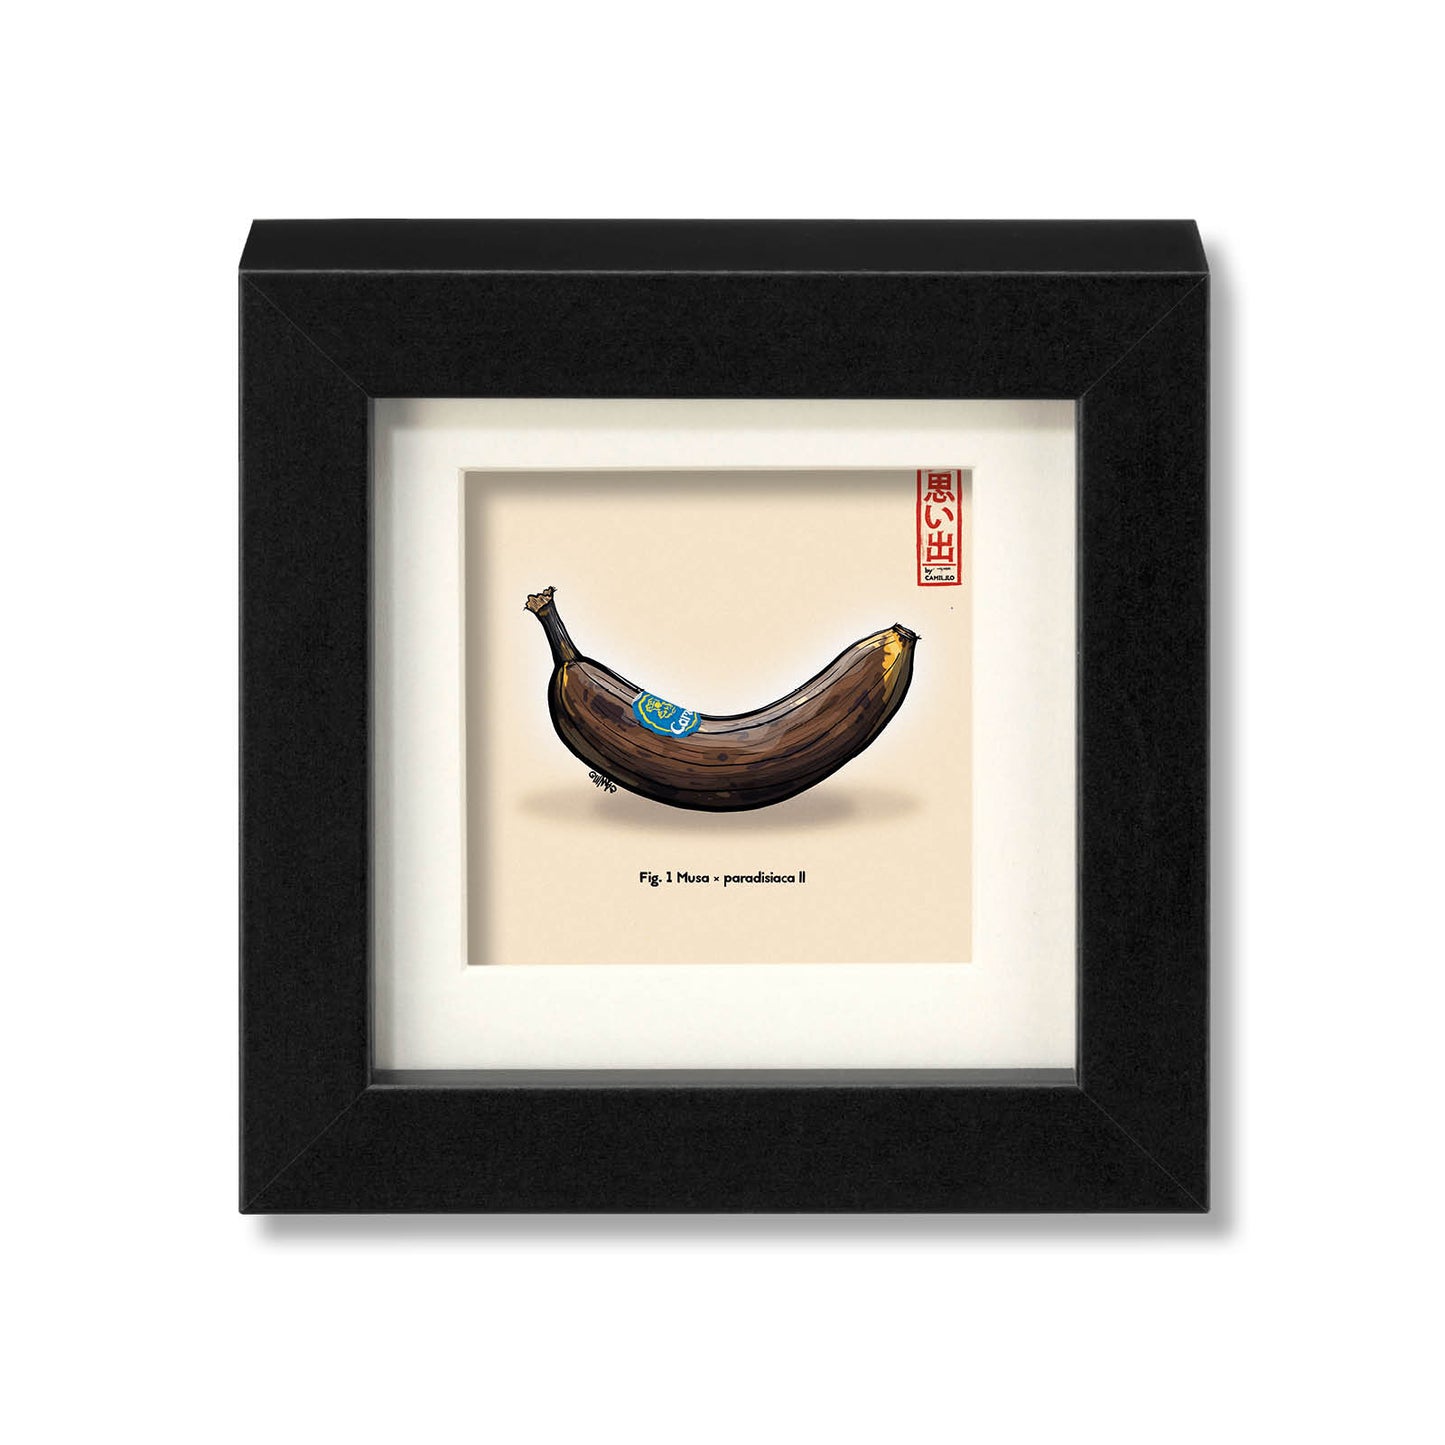 Giclée-Druck einer reifen Banane - Rockstar unter den Früchten - schwarzer Rahmen - kleine Größe